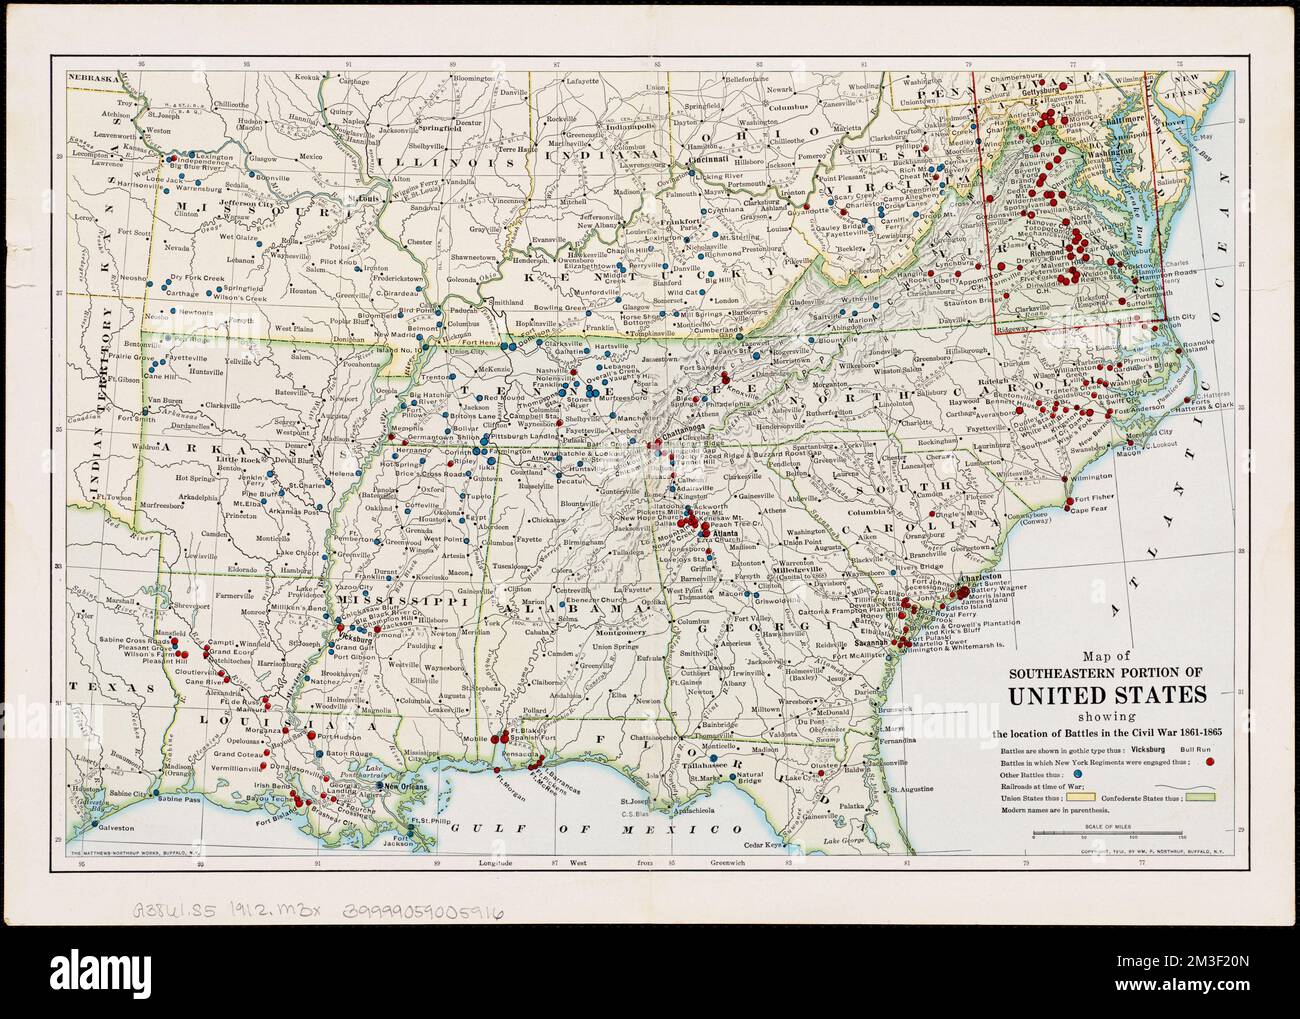 Mapa De La Porción Sureste De Estados Unidos Mostrando La Ubicación De Las Batallas En La Guerra 